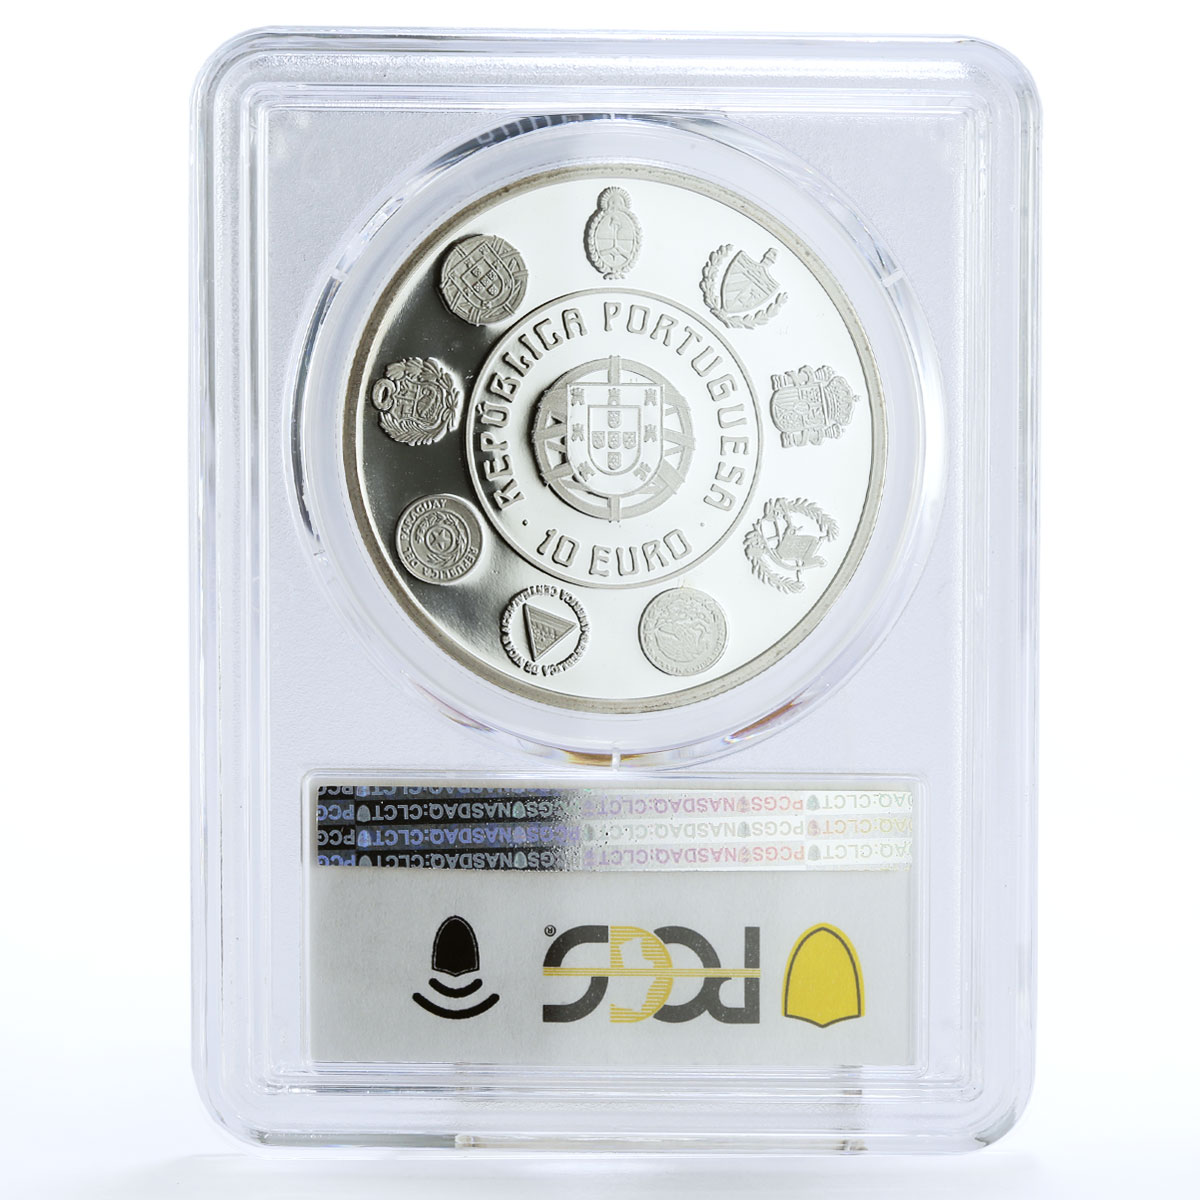 Portugal 10 euro Historical Coins Escudo Moneda Ship PR69 PCGS silver coin 2010